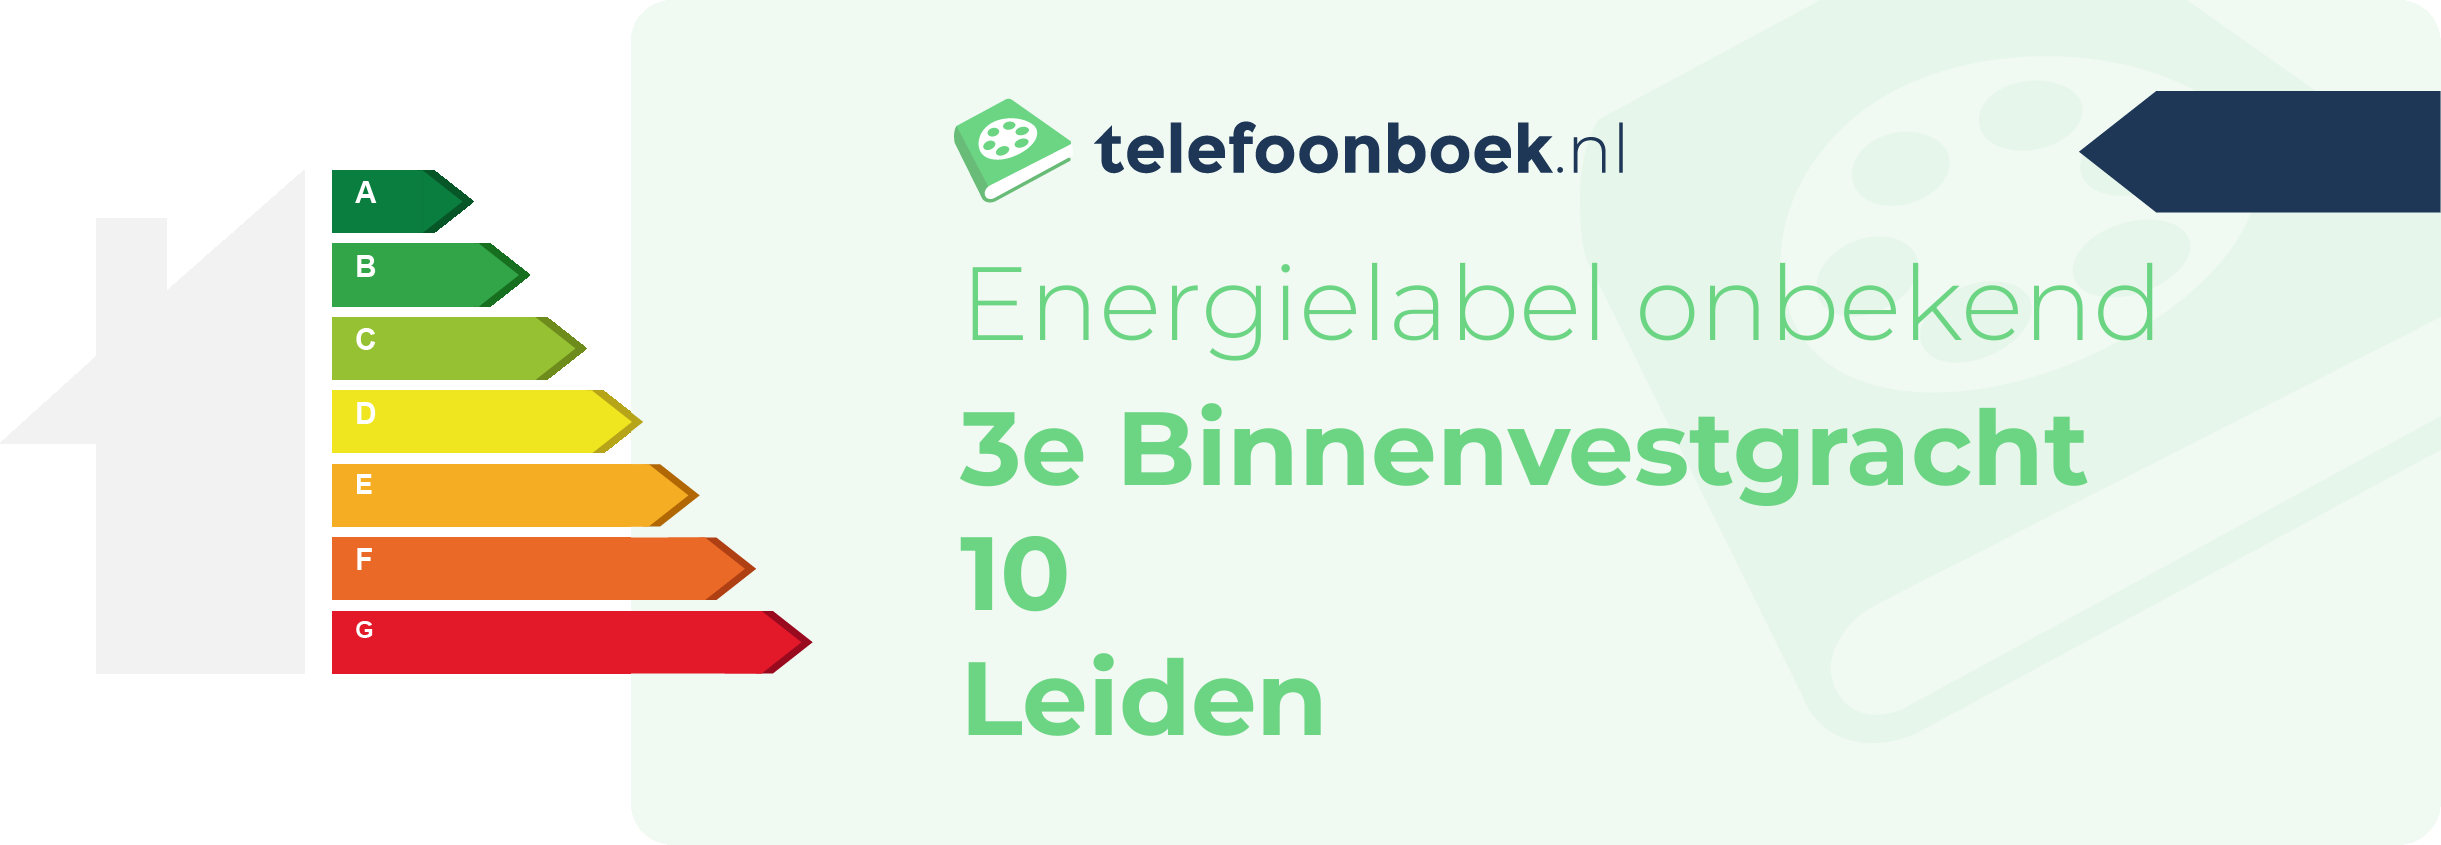 Energielabel 3e Binnenvestgracht 10 Leiden